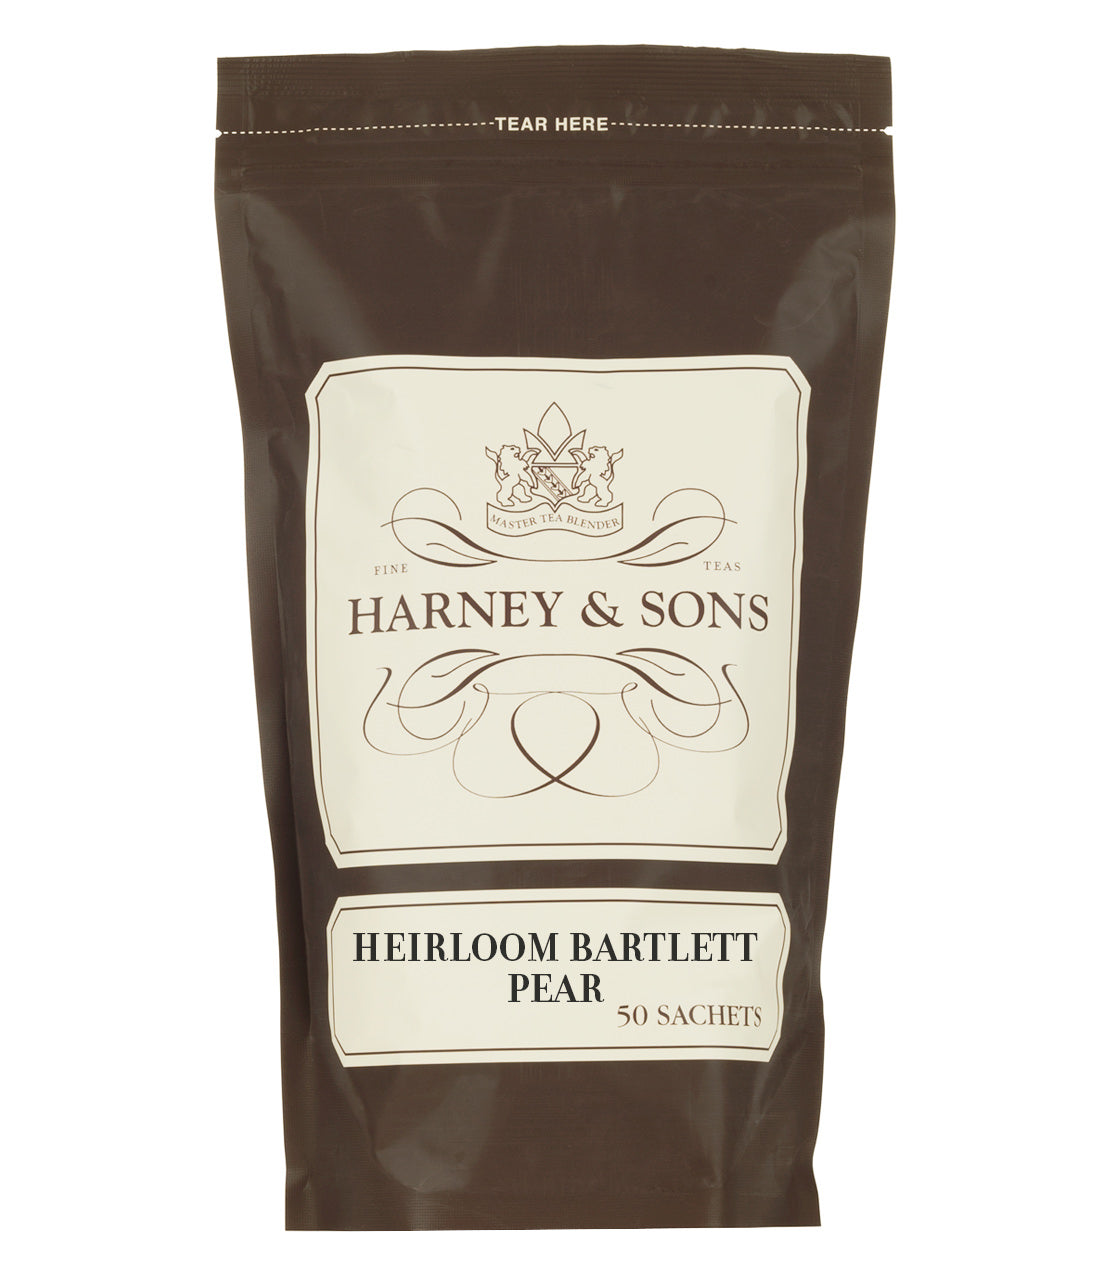 Heirloom Bartlett Pear, Bag of 50 Sachets - Sachets Bag of 50 Sachets - Harney & Sons Fine Teas